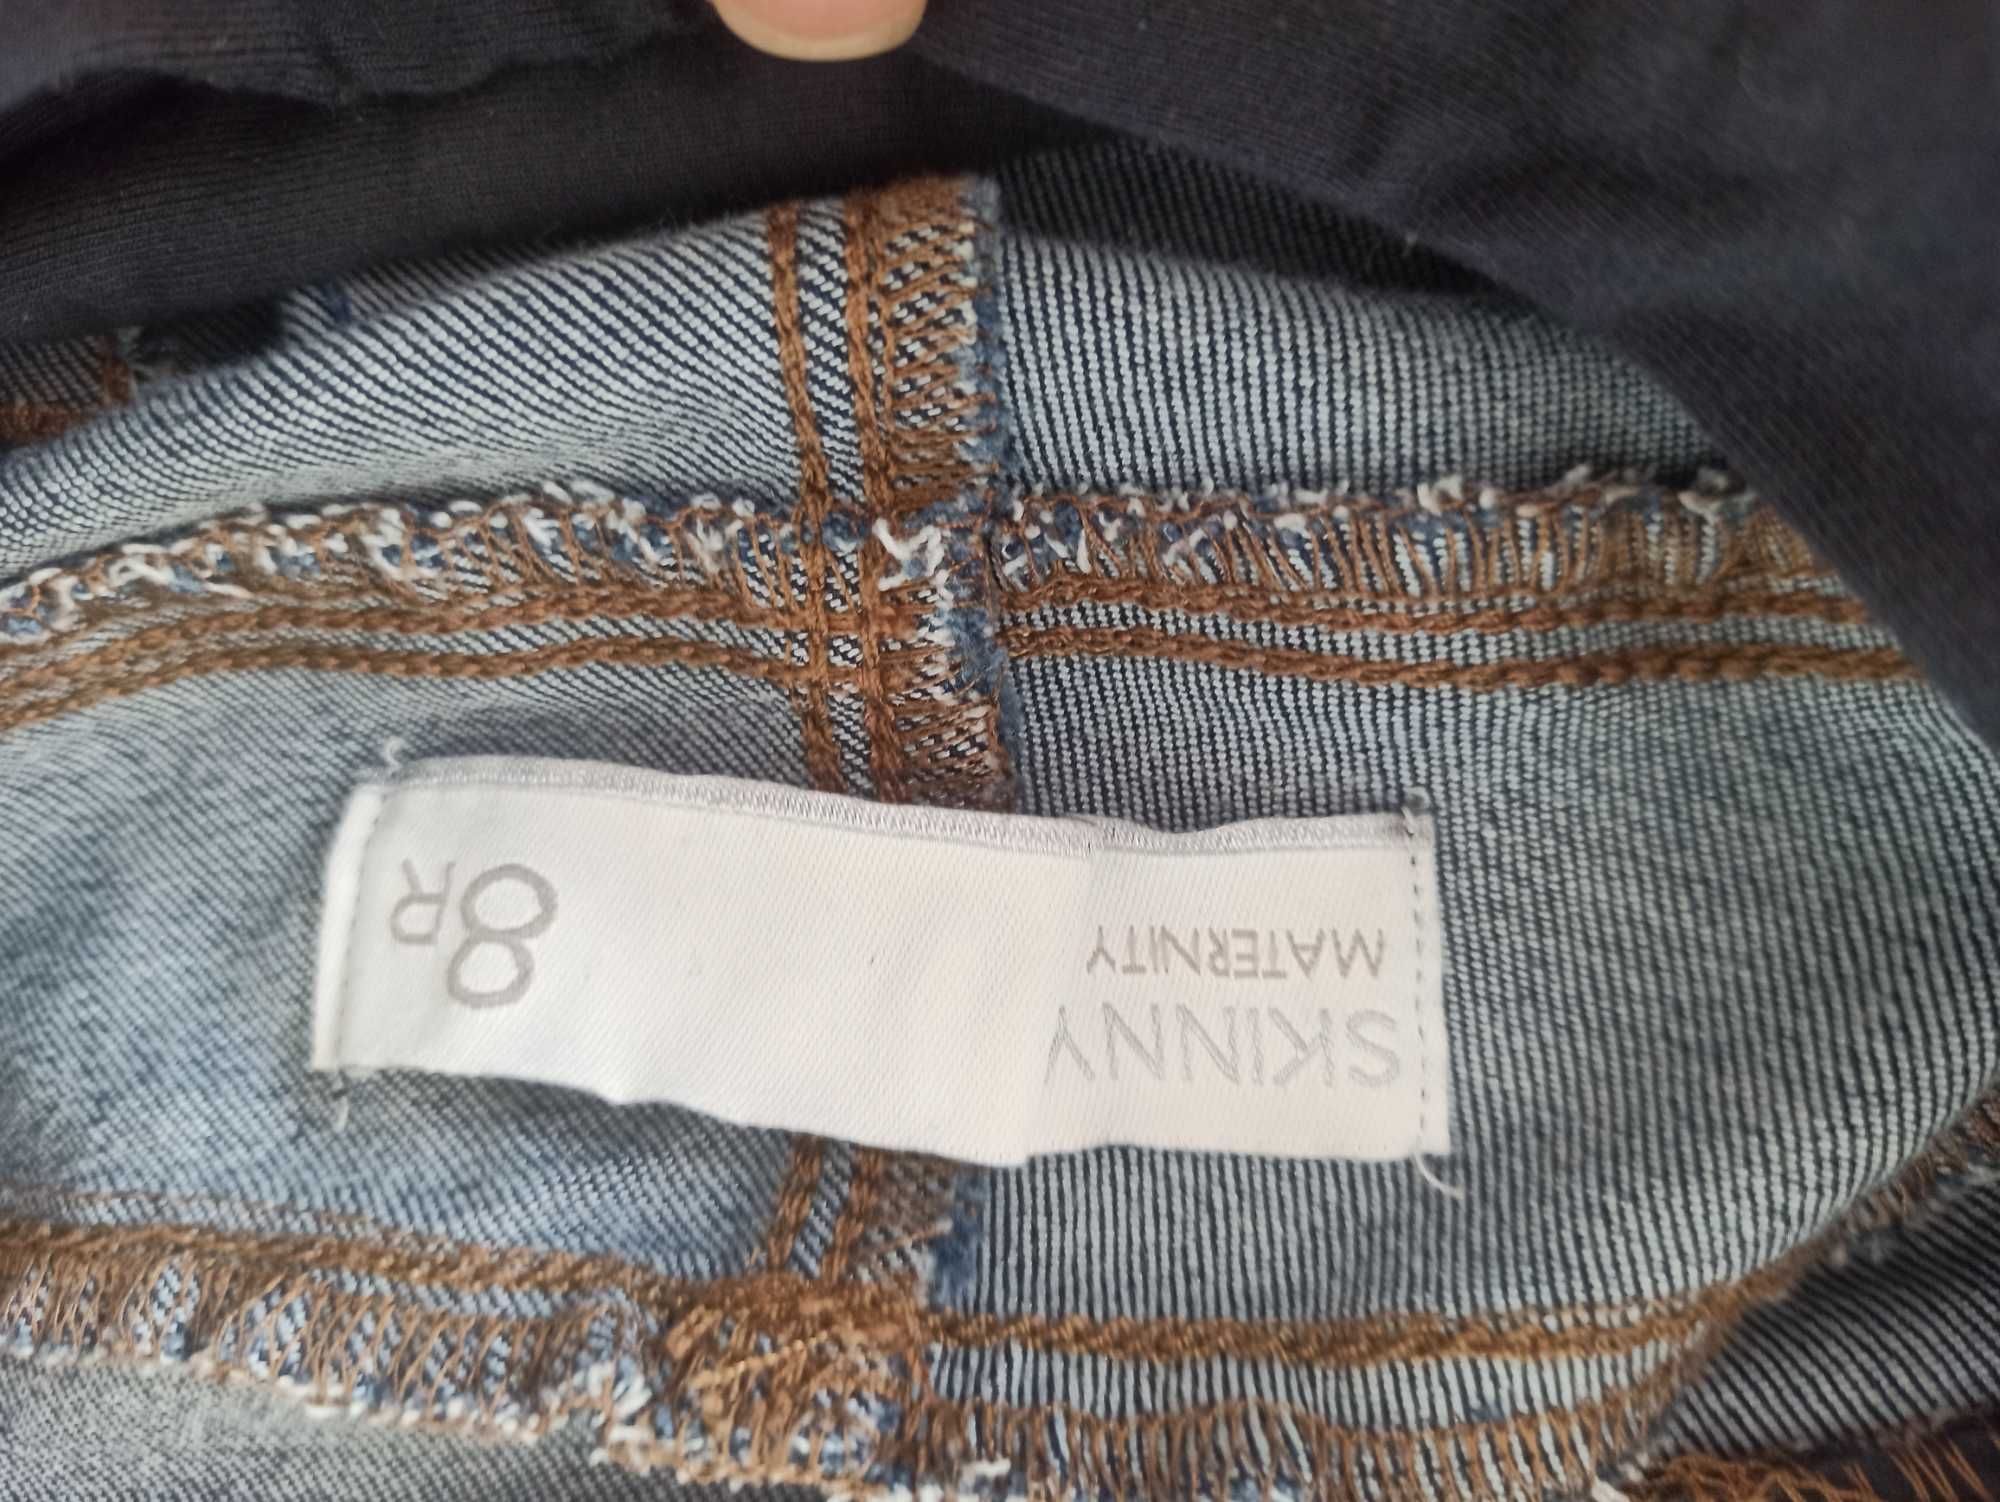 Spodnie jeansowe ciążowe granatowe rozmiar 36